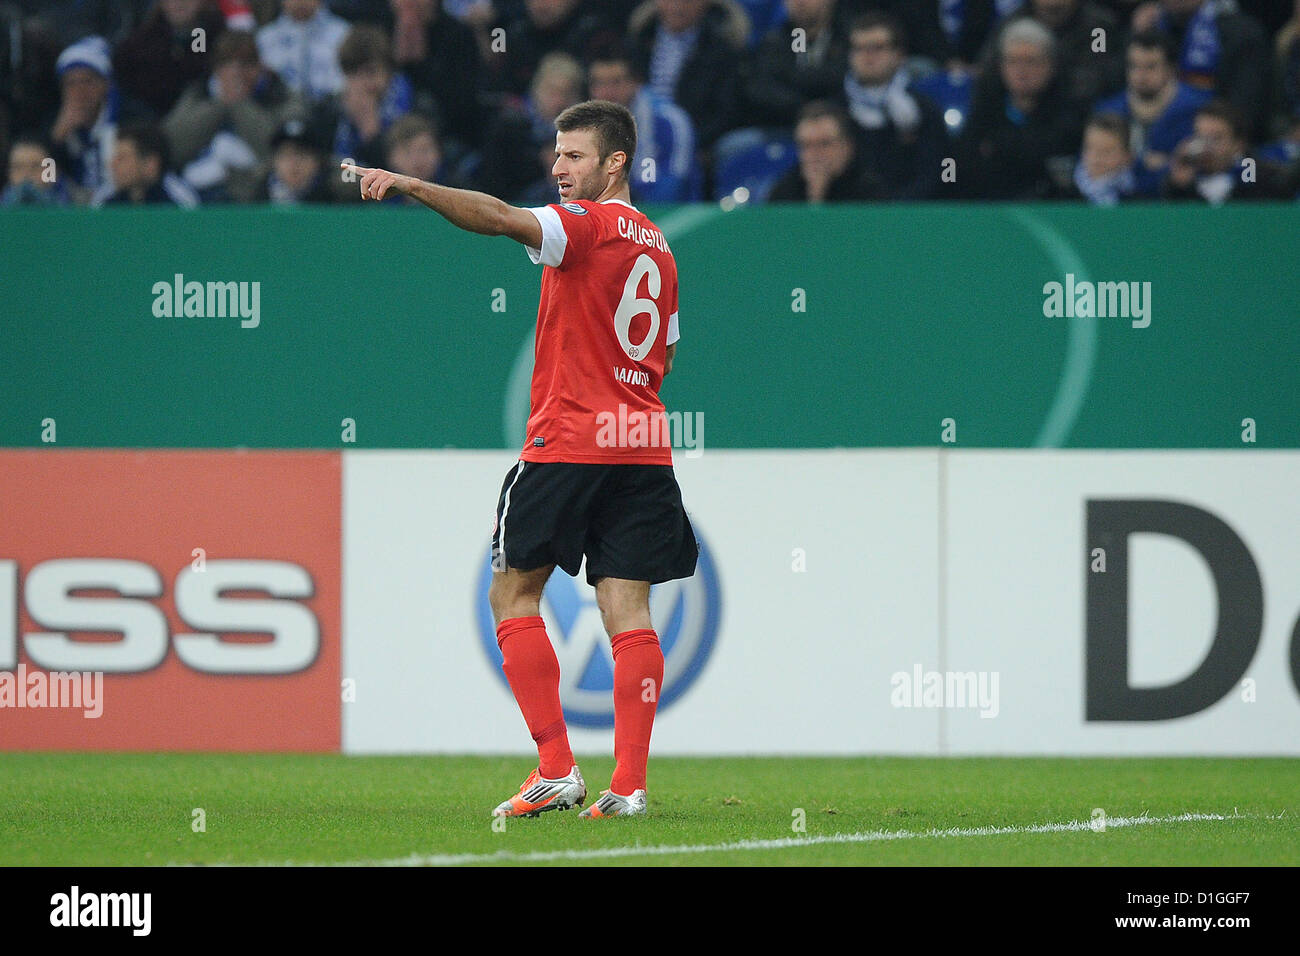 Der Mainzer Marco Caligiuri feiert seine 0-1 Tor in den DFB-Pokal Runde 16 Spiel zwischen Schalke 04 und FSV Mainz 05 in Veltins-Arena in Gelsenkirchen, Deutschland, 18. Dezember 2012. Foto: Revierfoto Stockfoto